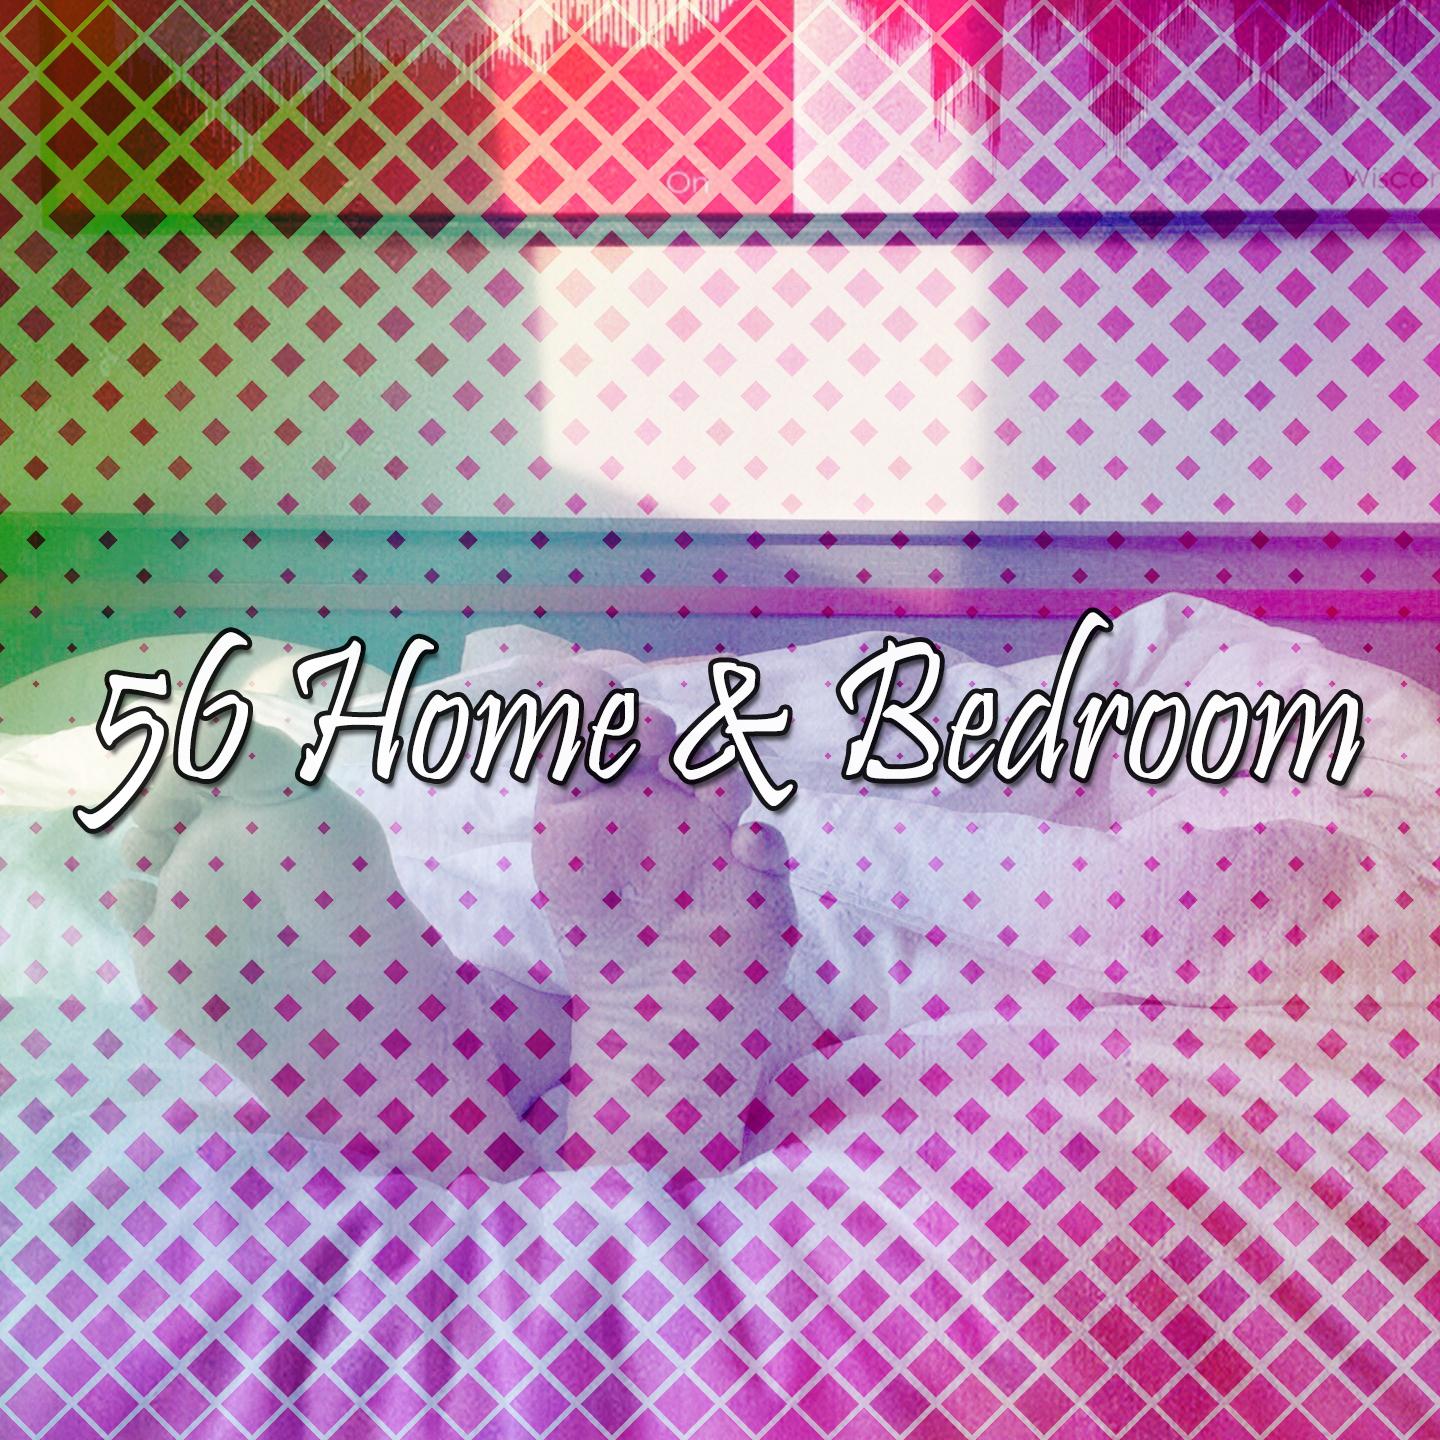 56 Home & Bedroom